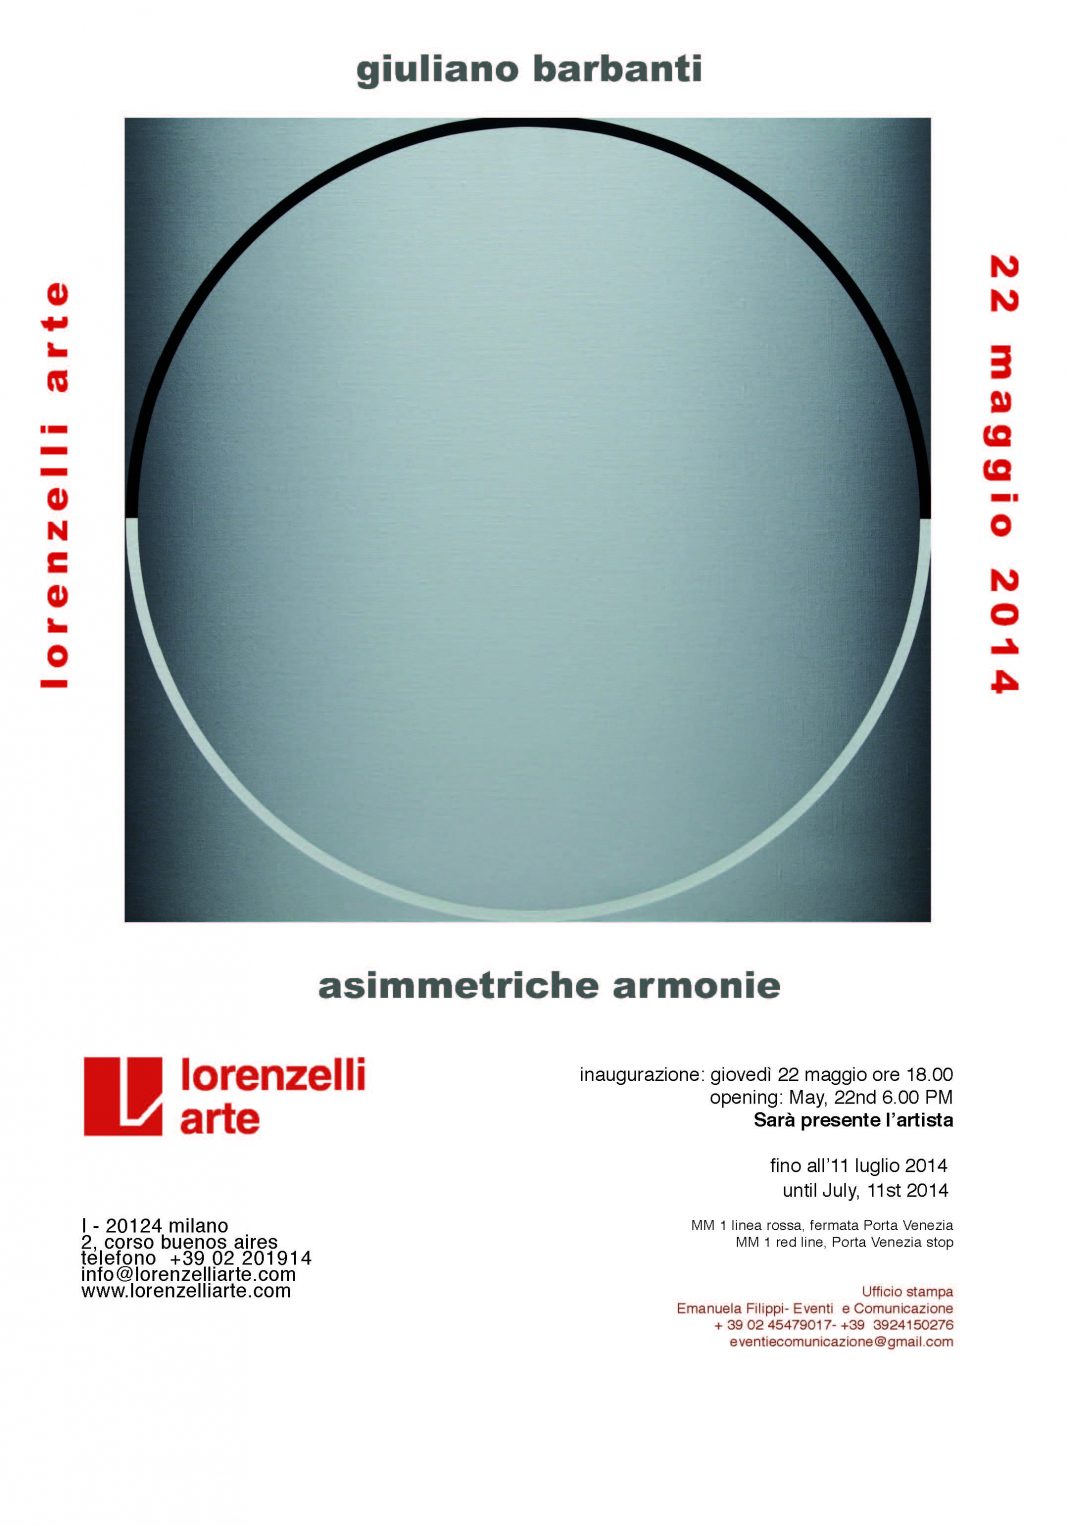 Giuliano Barbanti – Asimmetriche armoniehttps://www.exibart.com/repository/media/eventi/2014/05/giuliano-barbanti-8211-asimmetriche-armonie-1068x1526.jpg